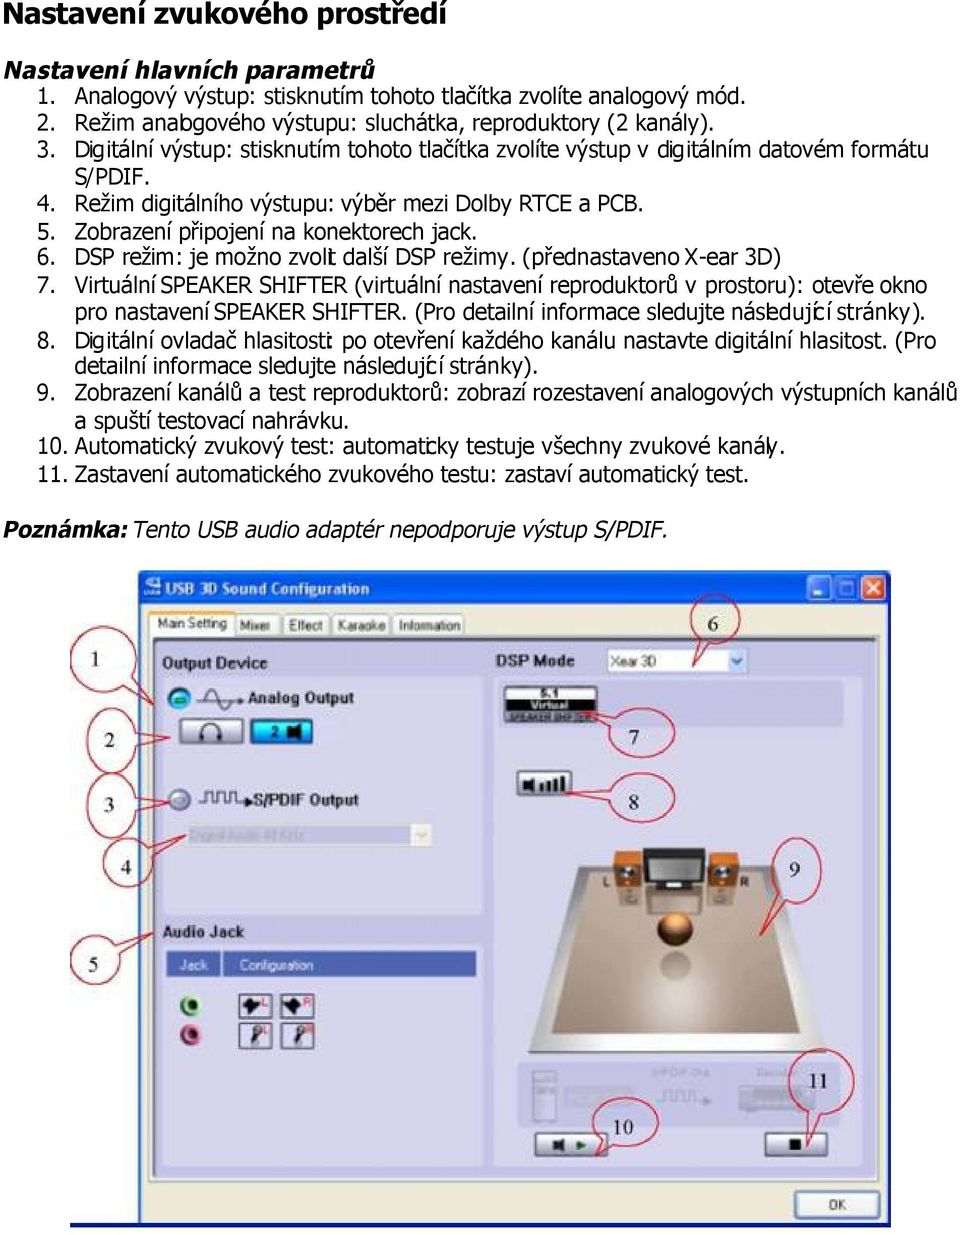 6. DSP režim: je možno zvolit další DSP režimy. (přednastaveno X-ear 3D) 7. Virtuální SPEAKER SHIFTER (virtuální nastavení reproduktorů v prostoru): otevře okno pro nastavení SPEAKER SHIFTER.